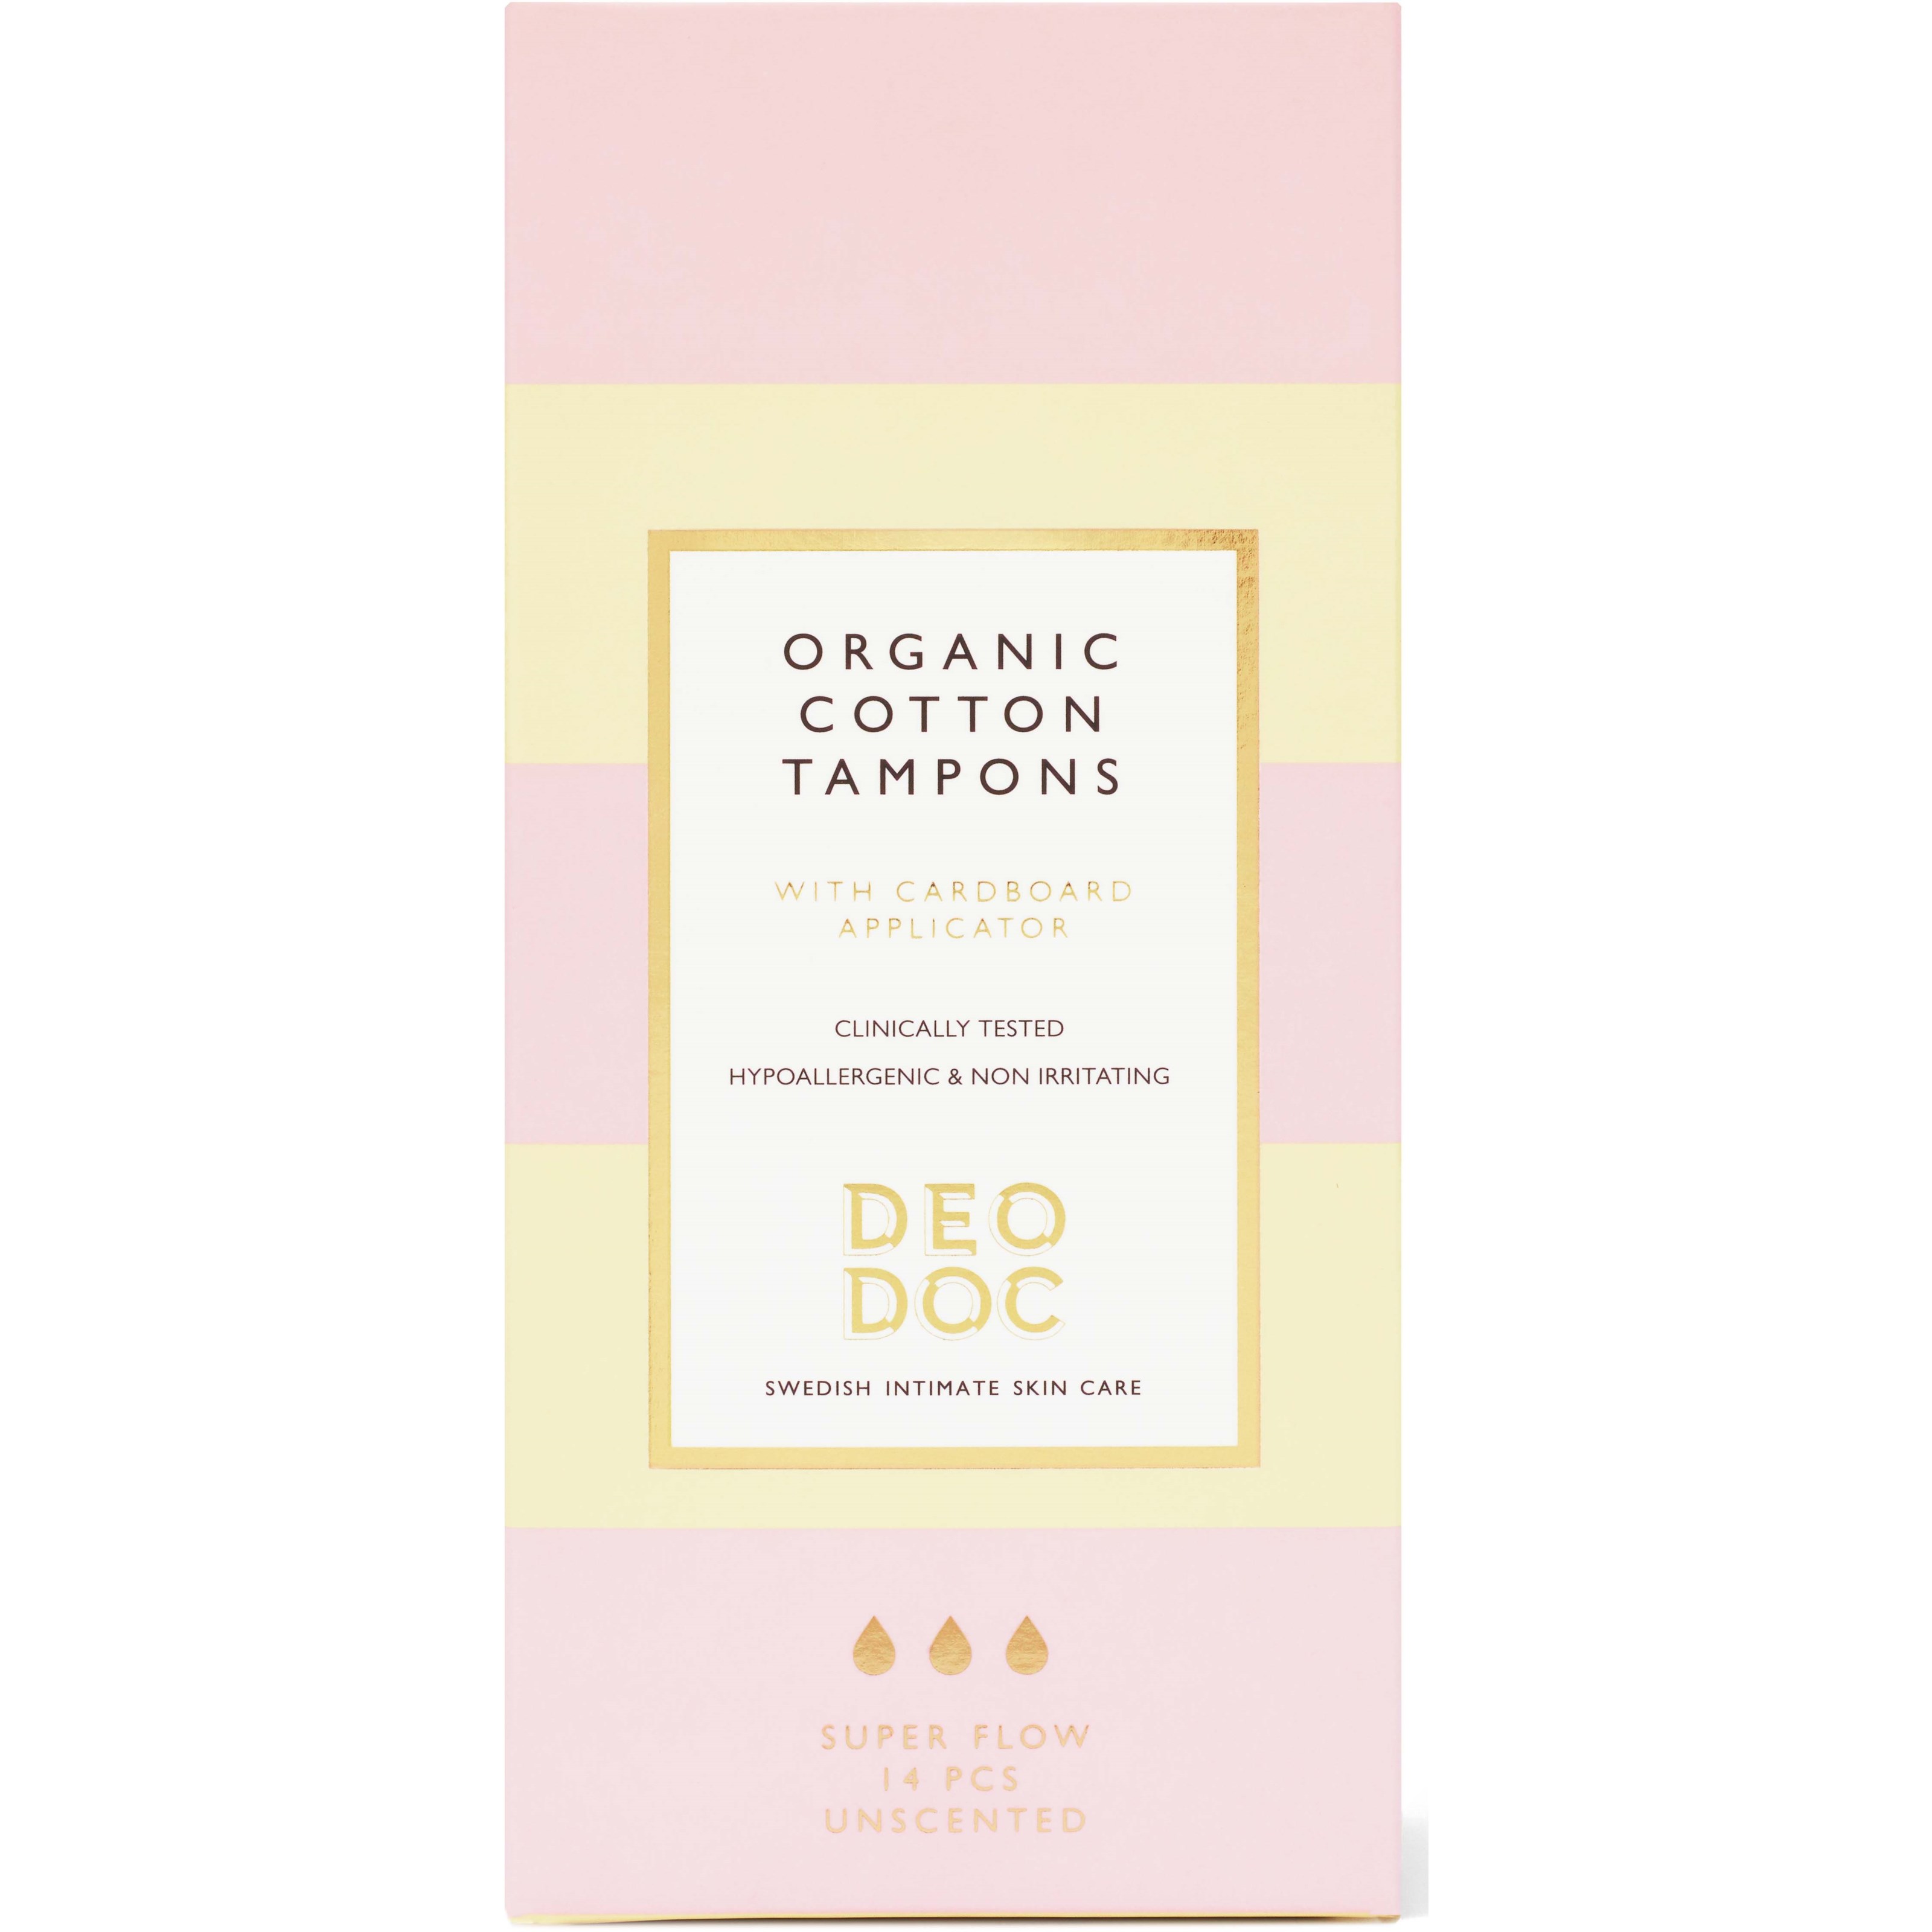 DeoDoc Organic Cotton Tampons Super